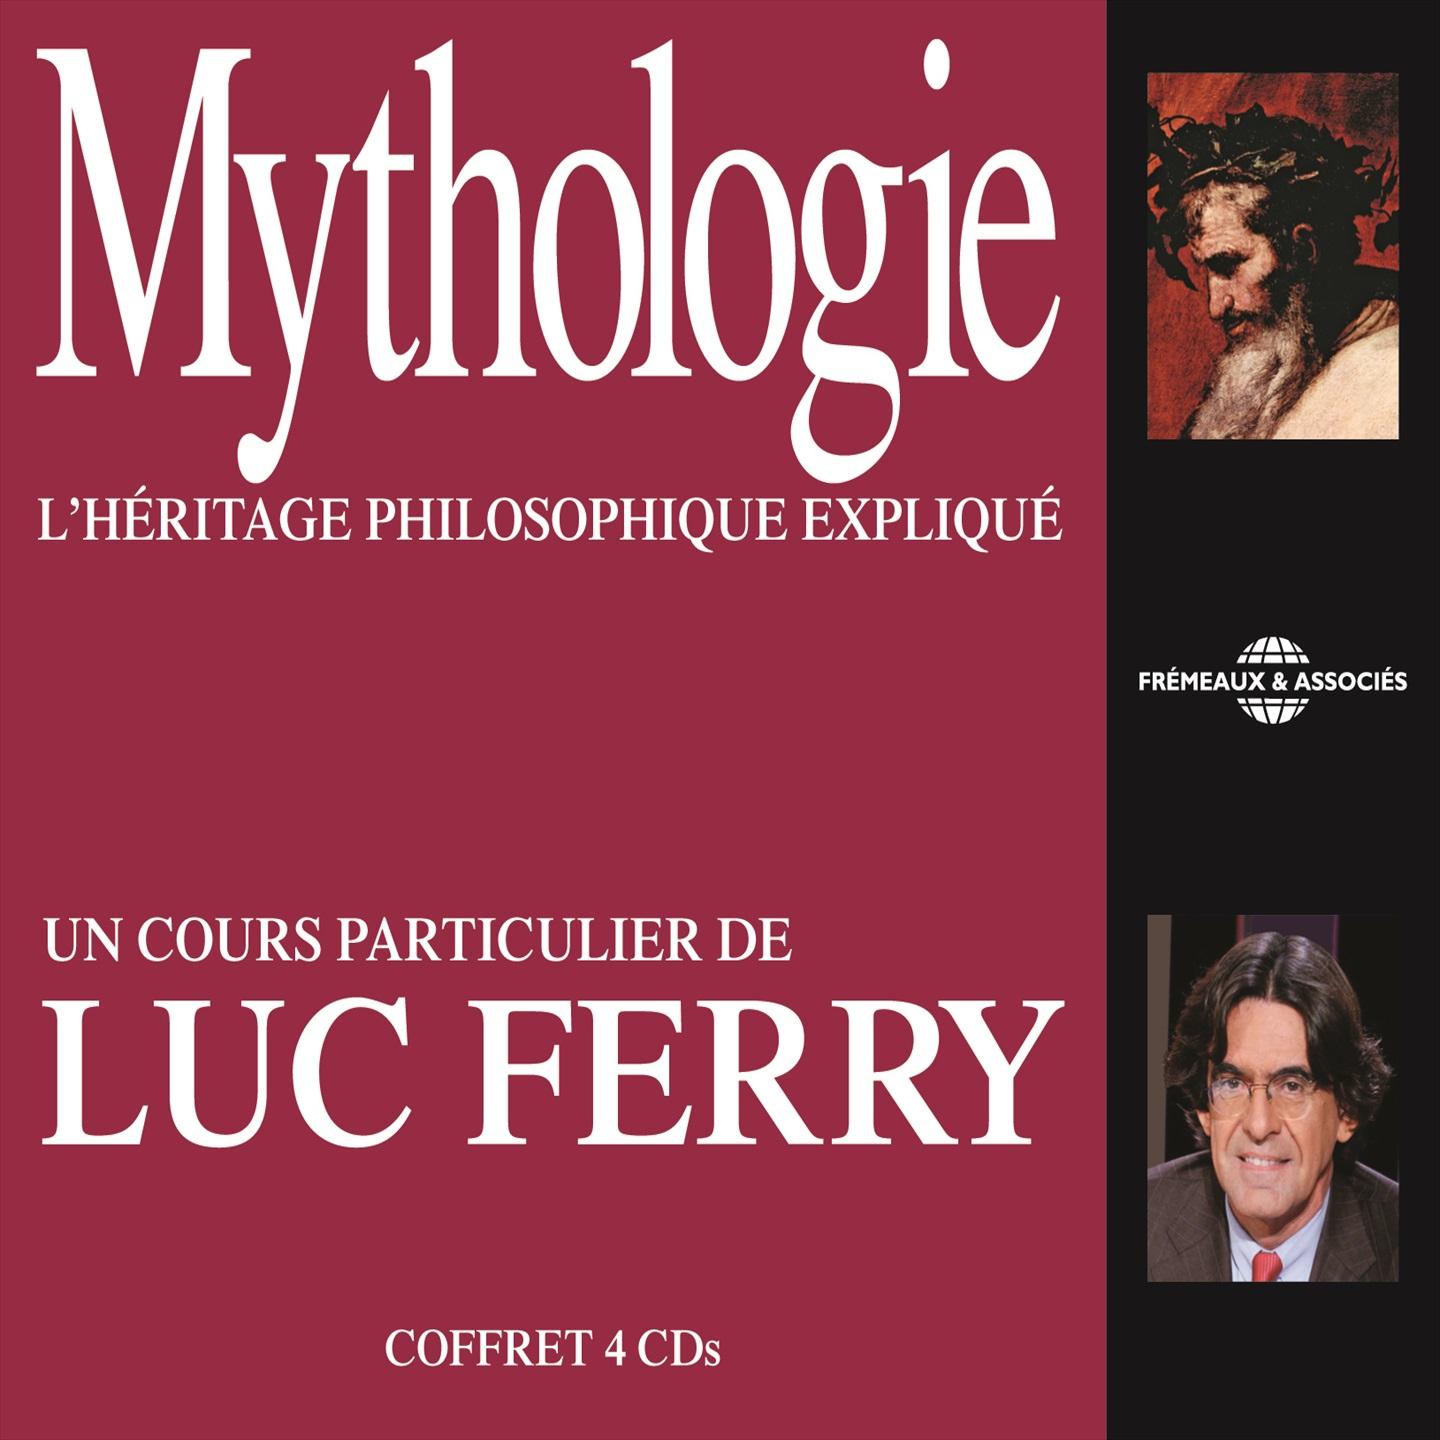 Luc Ferry : Mythologie, l' he ritage philosophique explique Un cours particulier de Luc Ferry